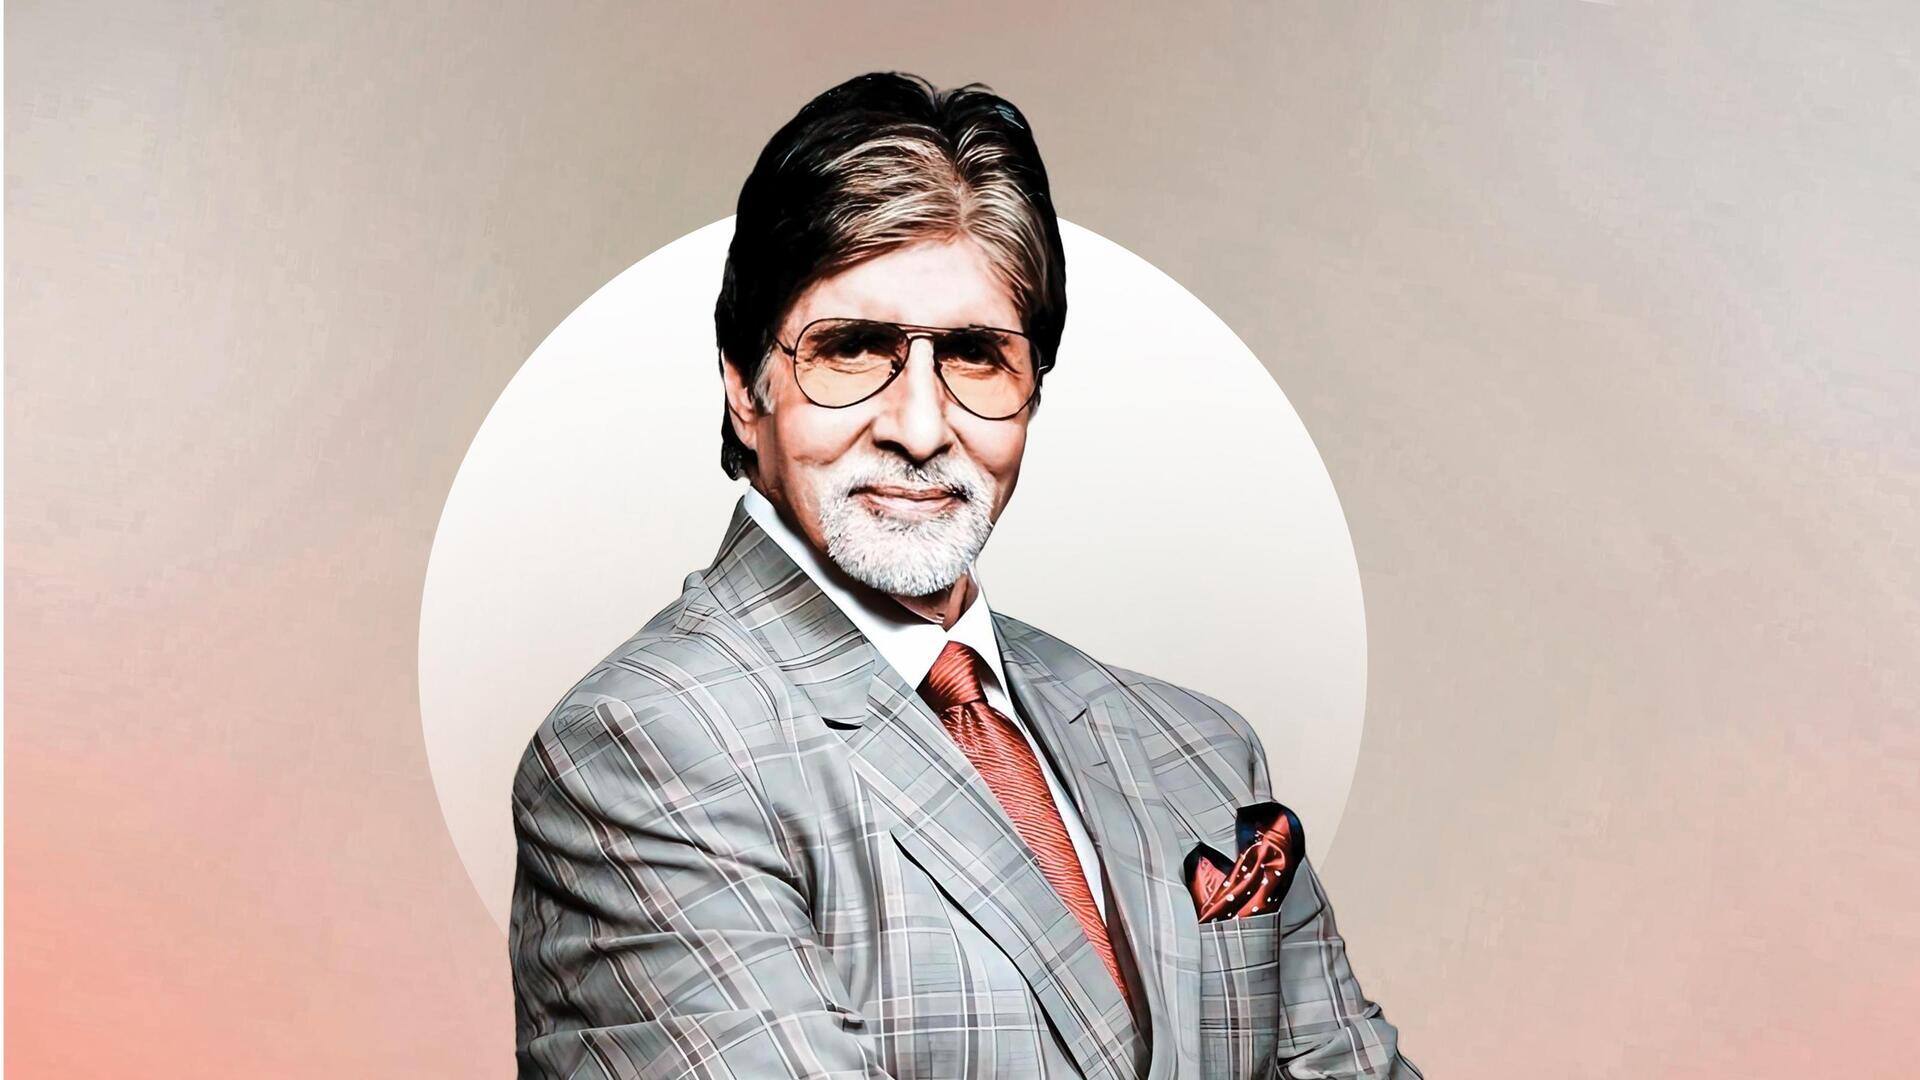 इंडियन स्ट्रीट प्रीमियर लीग: अमिताभ बच्चन की अपनी टीम का नाम रखा 'माझी मुंबई', देखिए वीडियो